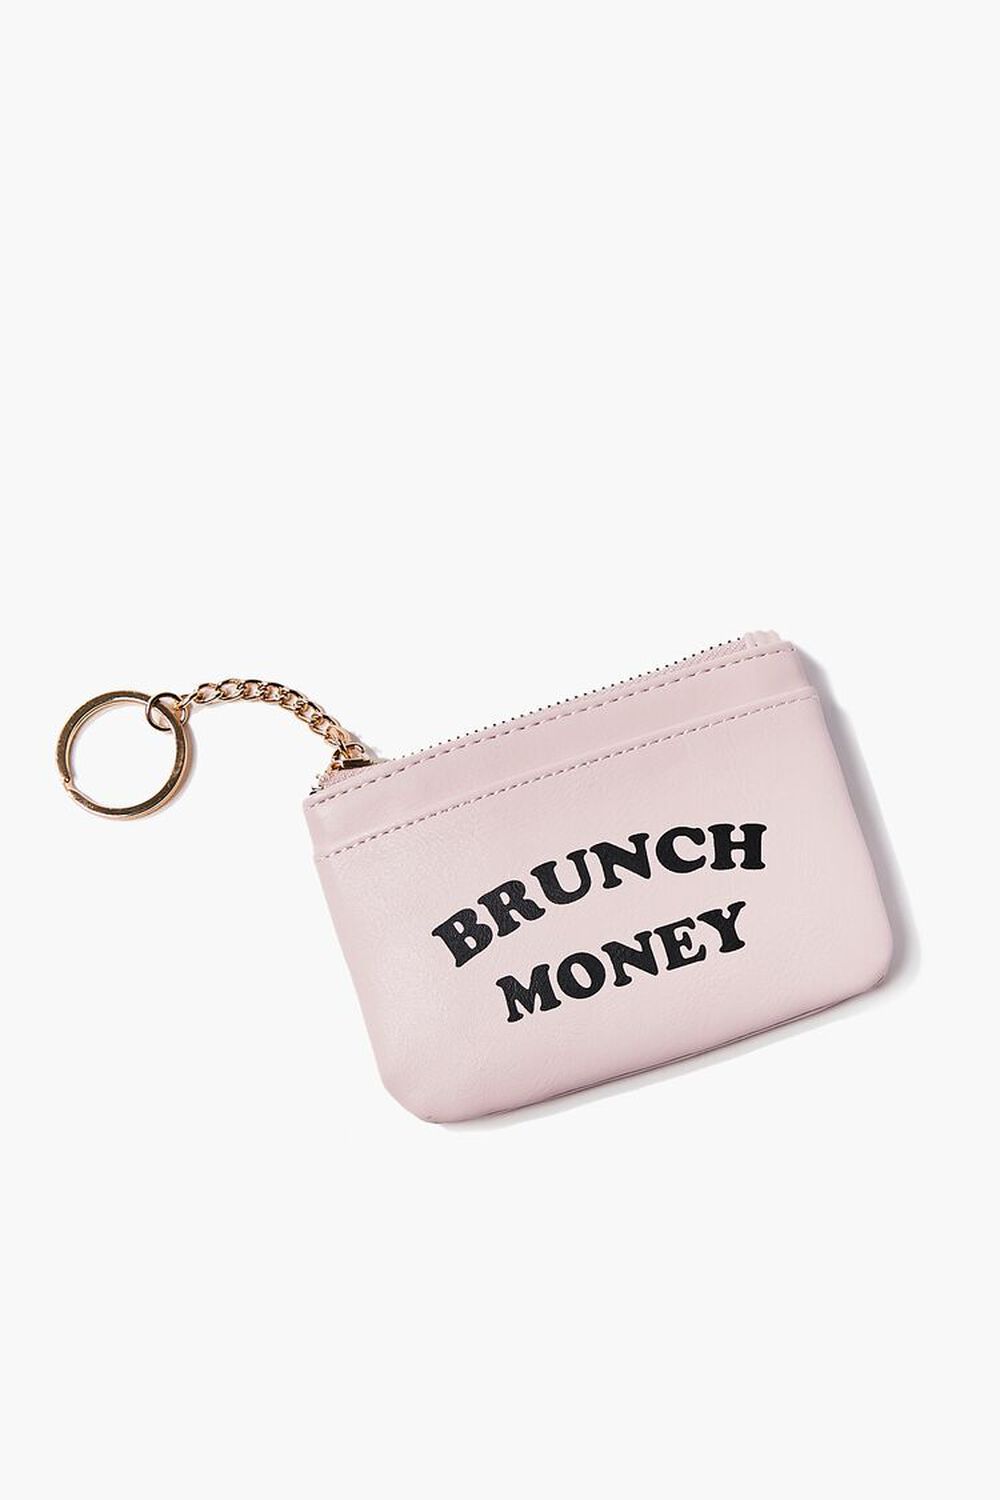 The Brunch Money Mini Pouch